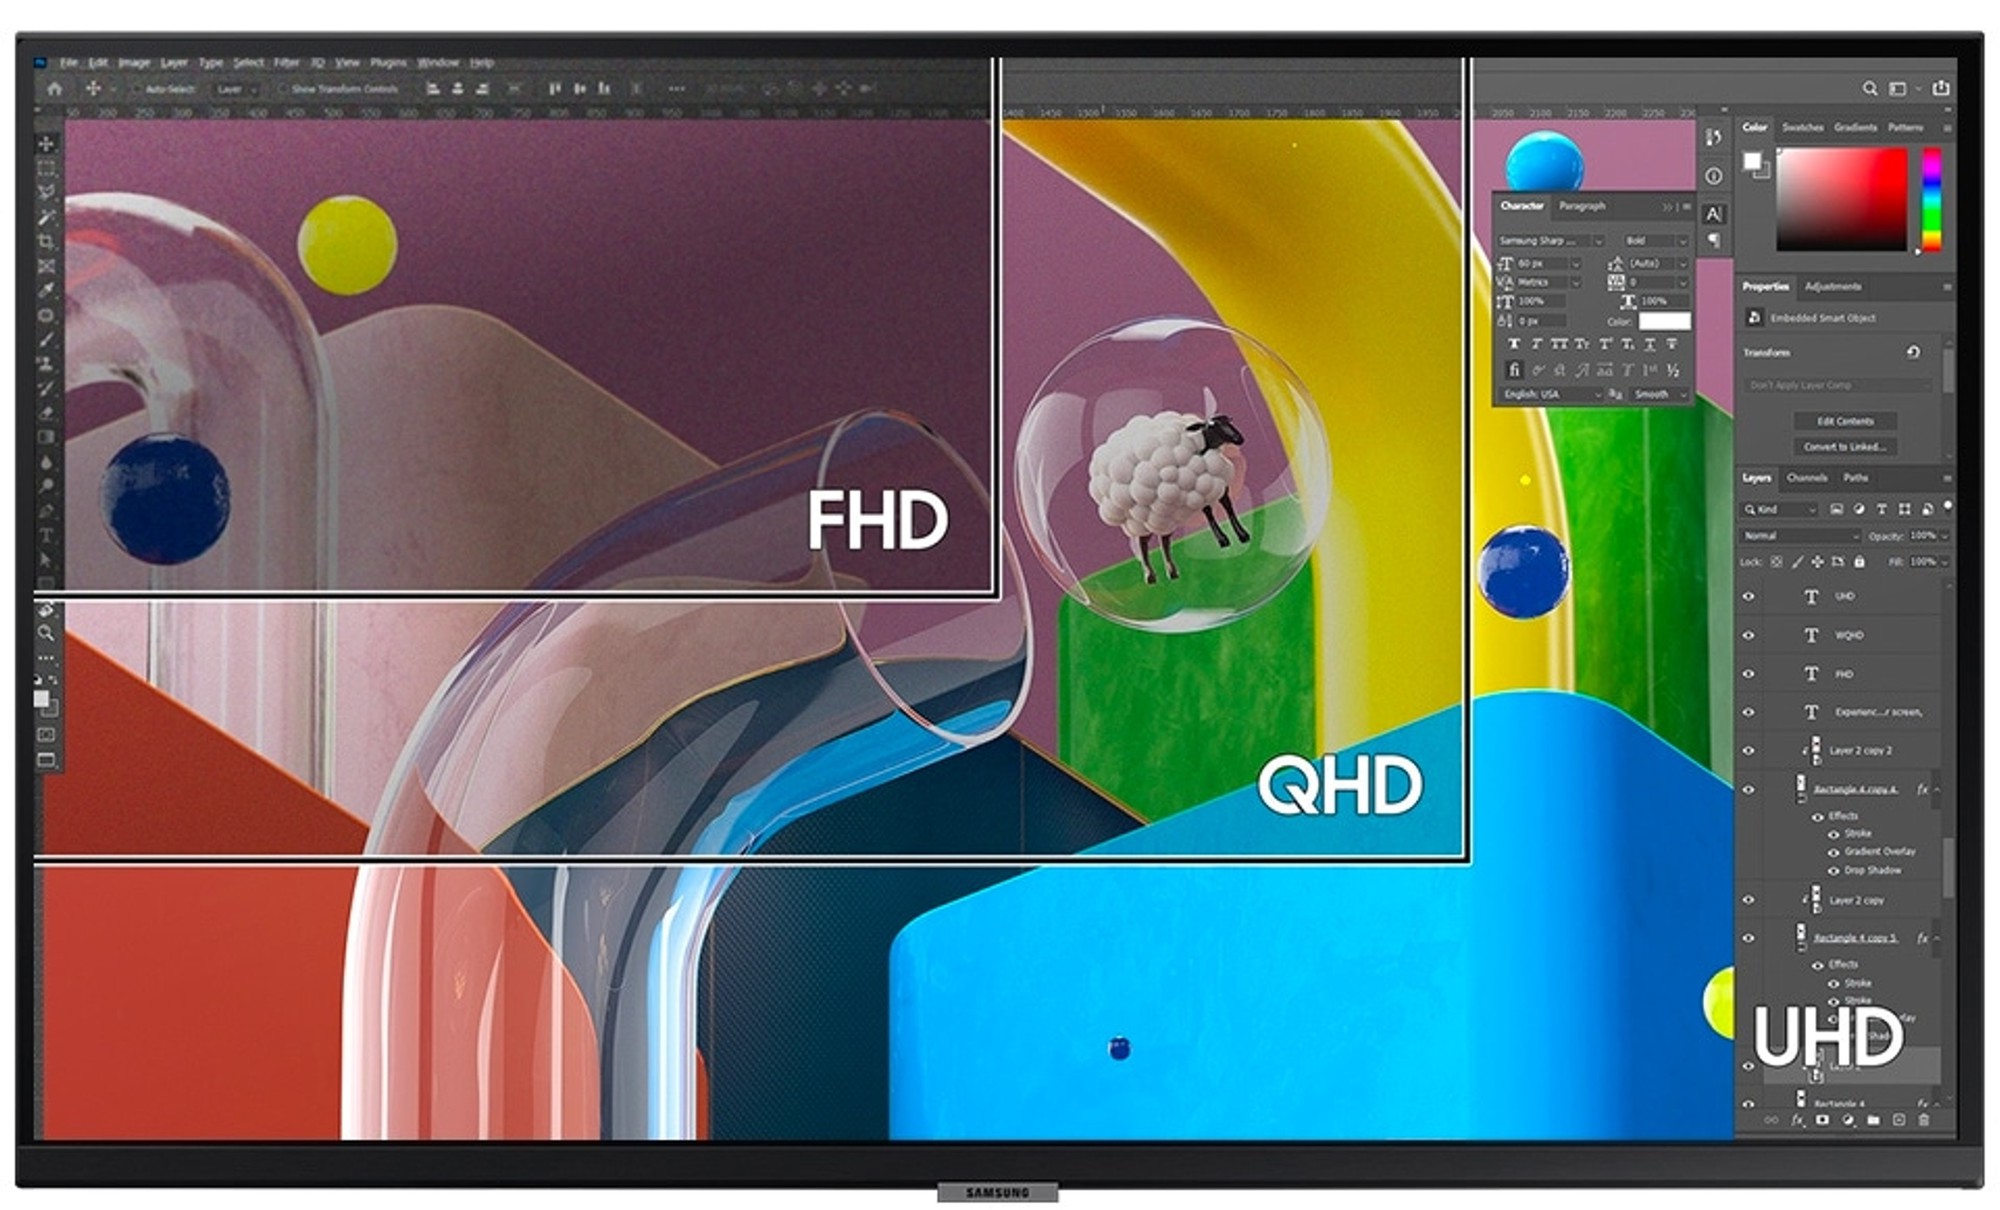 Samsung UR55 và Viewfinity S8: 2 mẫu màn hình đồ họa của Samsung dành cho người mới bắt đầu- Ảnh 1.